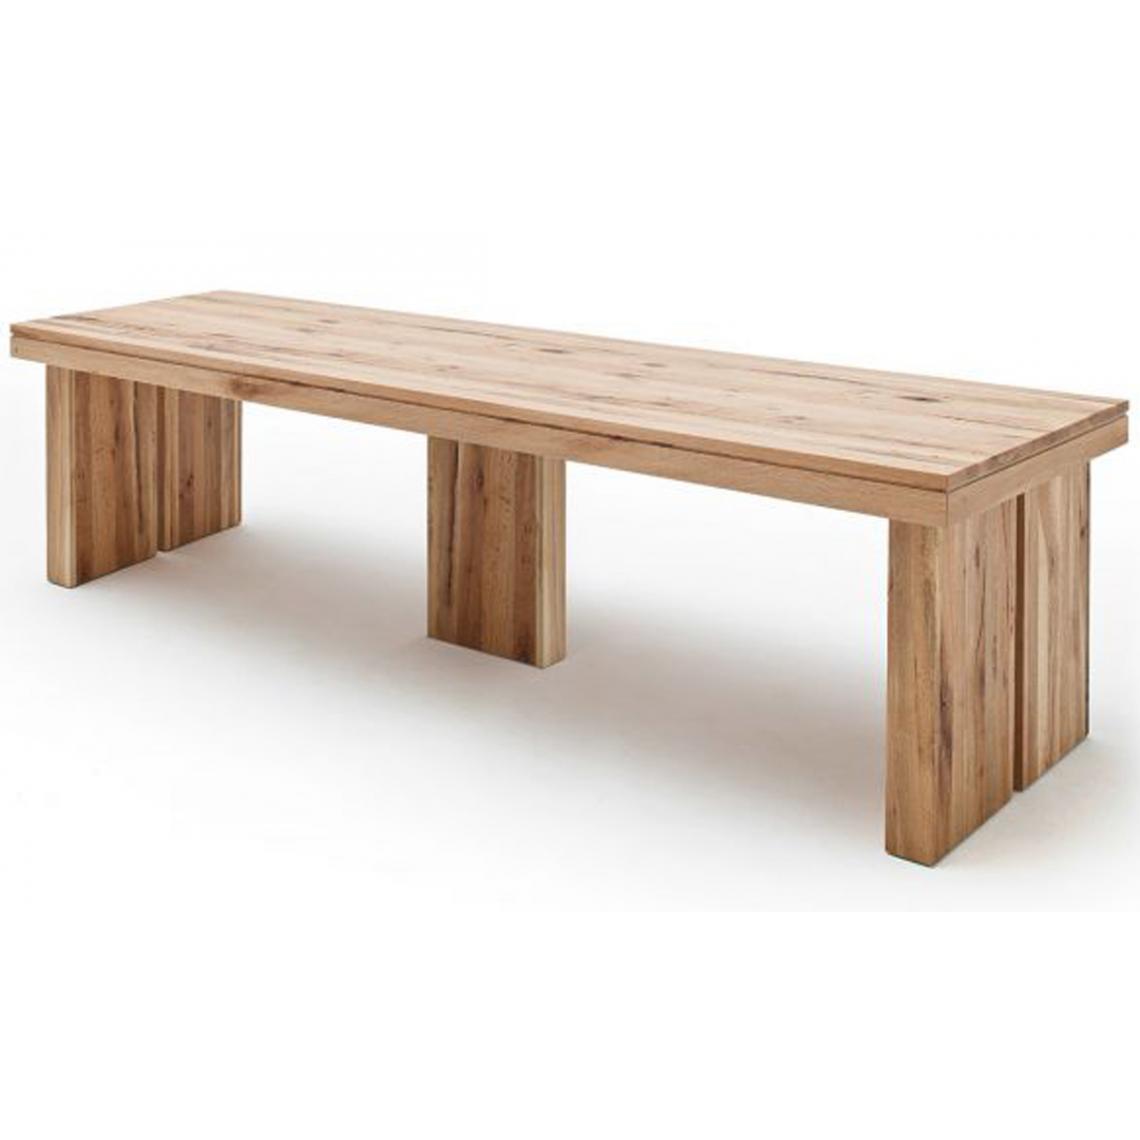 Pegane - Table à manger rectangulaire en chêne sauvage laqué mat massif - L.400 x H.76 x P.120 cm - Tables à manger